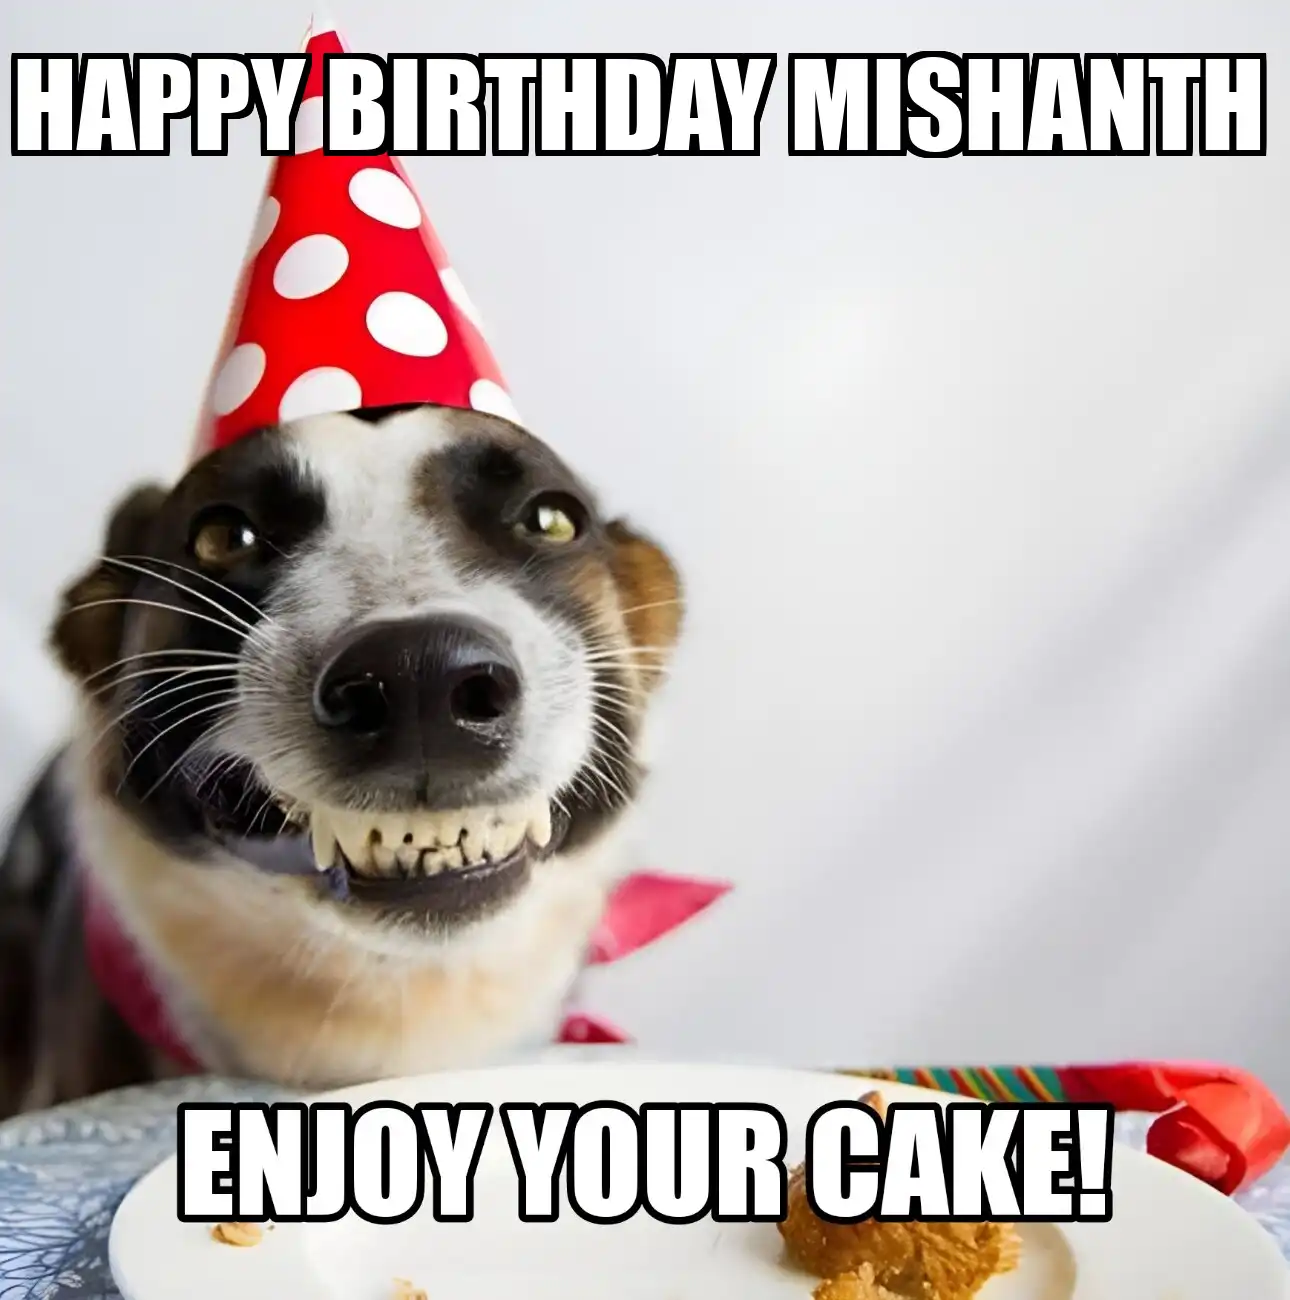 Happy Birthday Mishanth Enjoy Your Cake Dog Meme